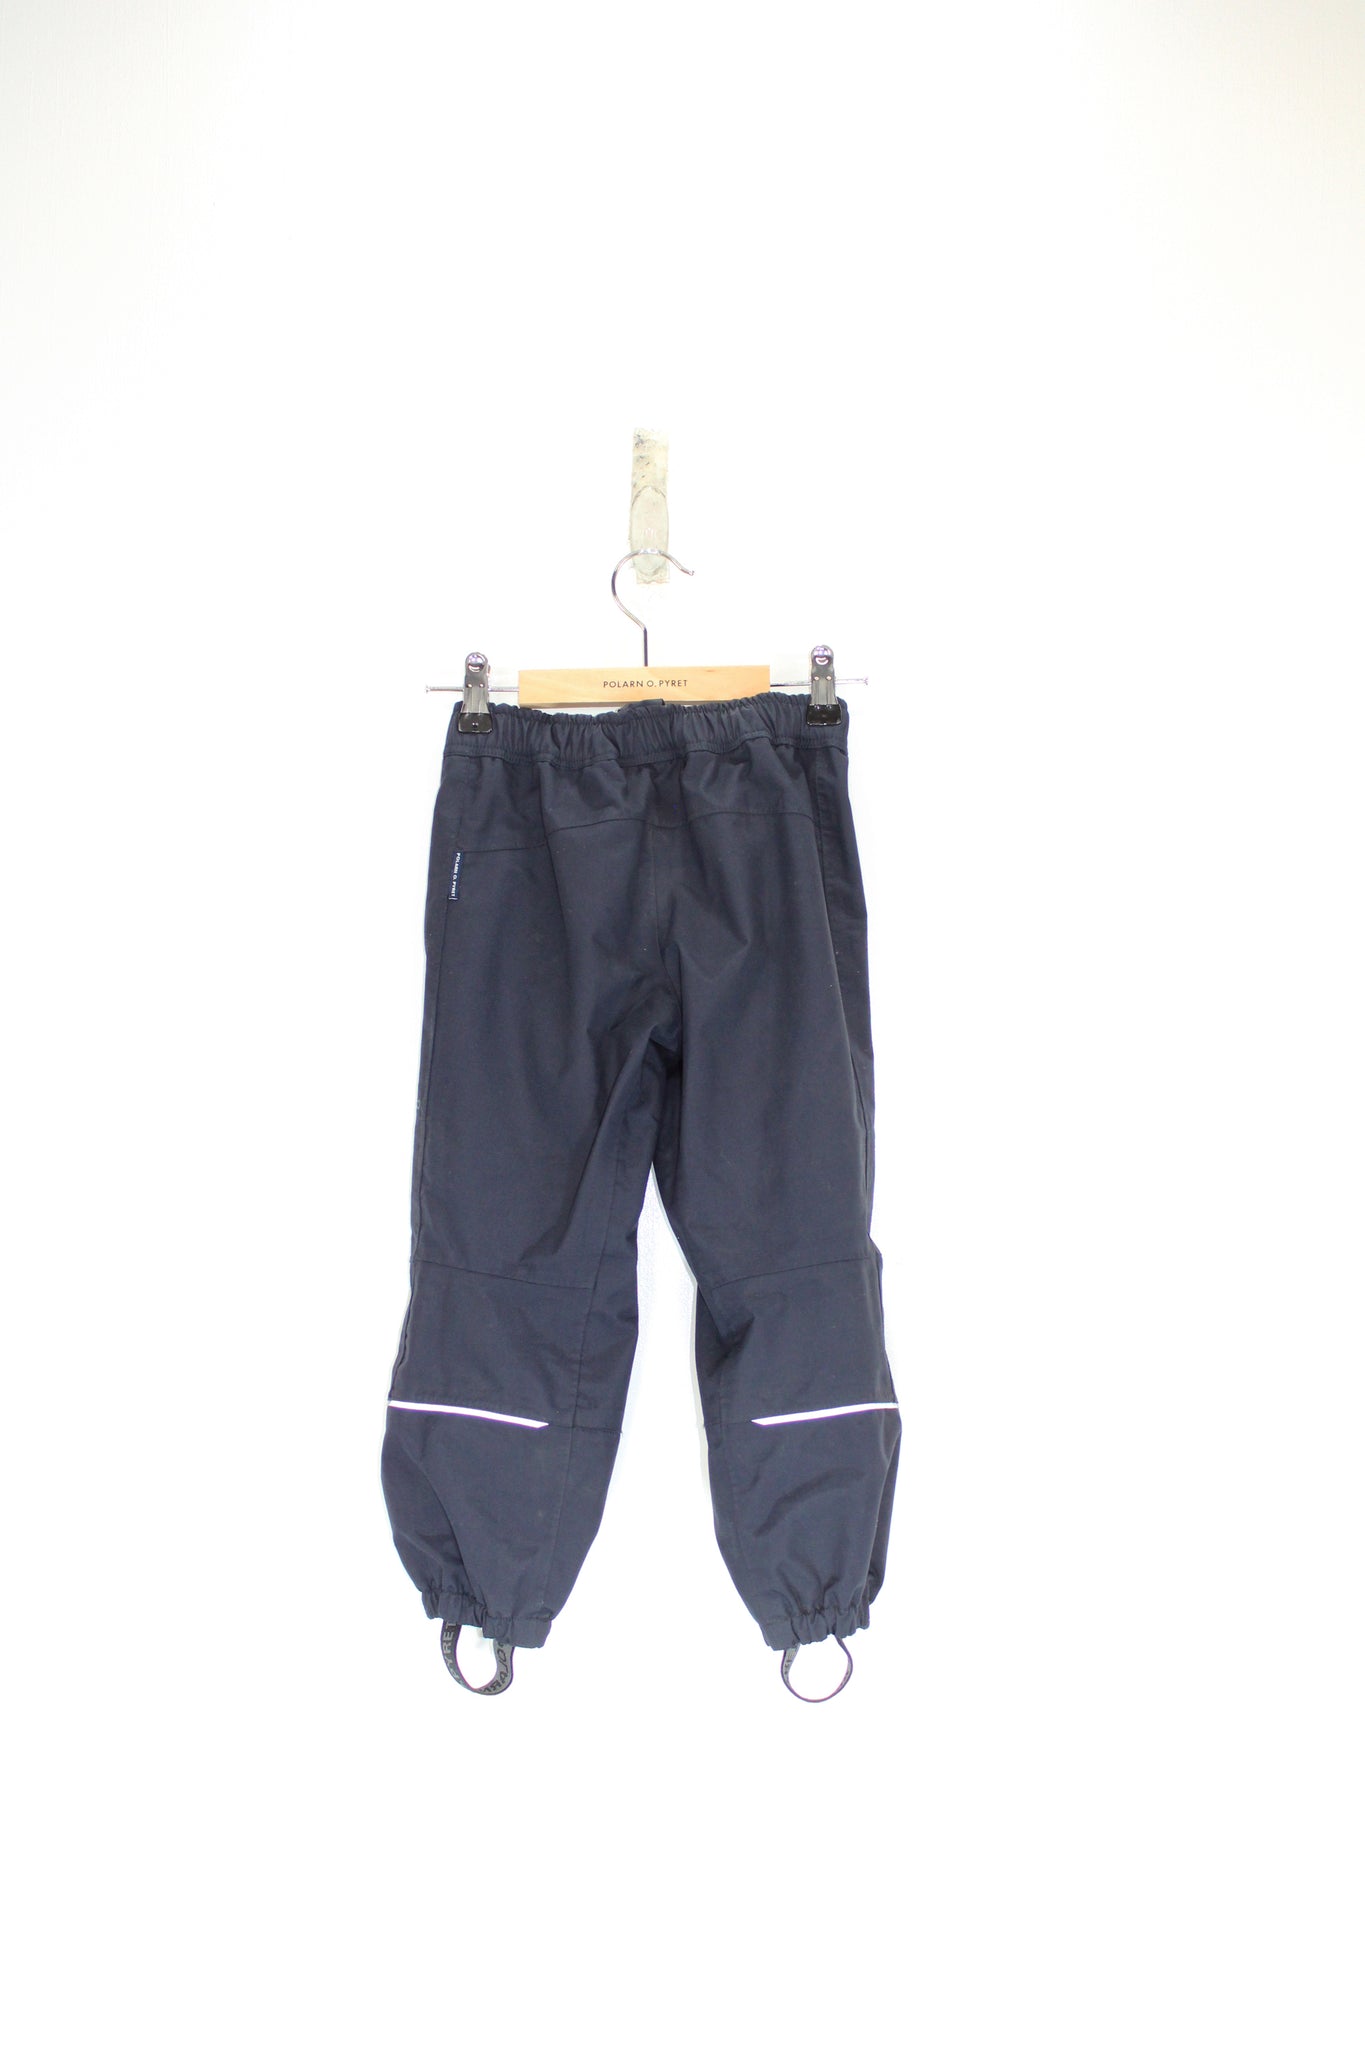 Kids Outerwear Trousers 2-3y / 98